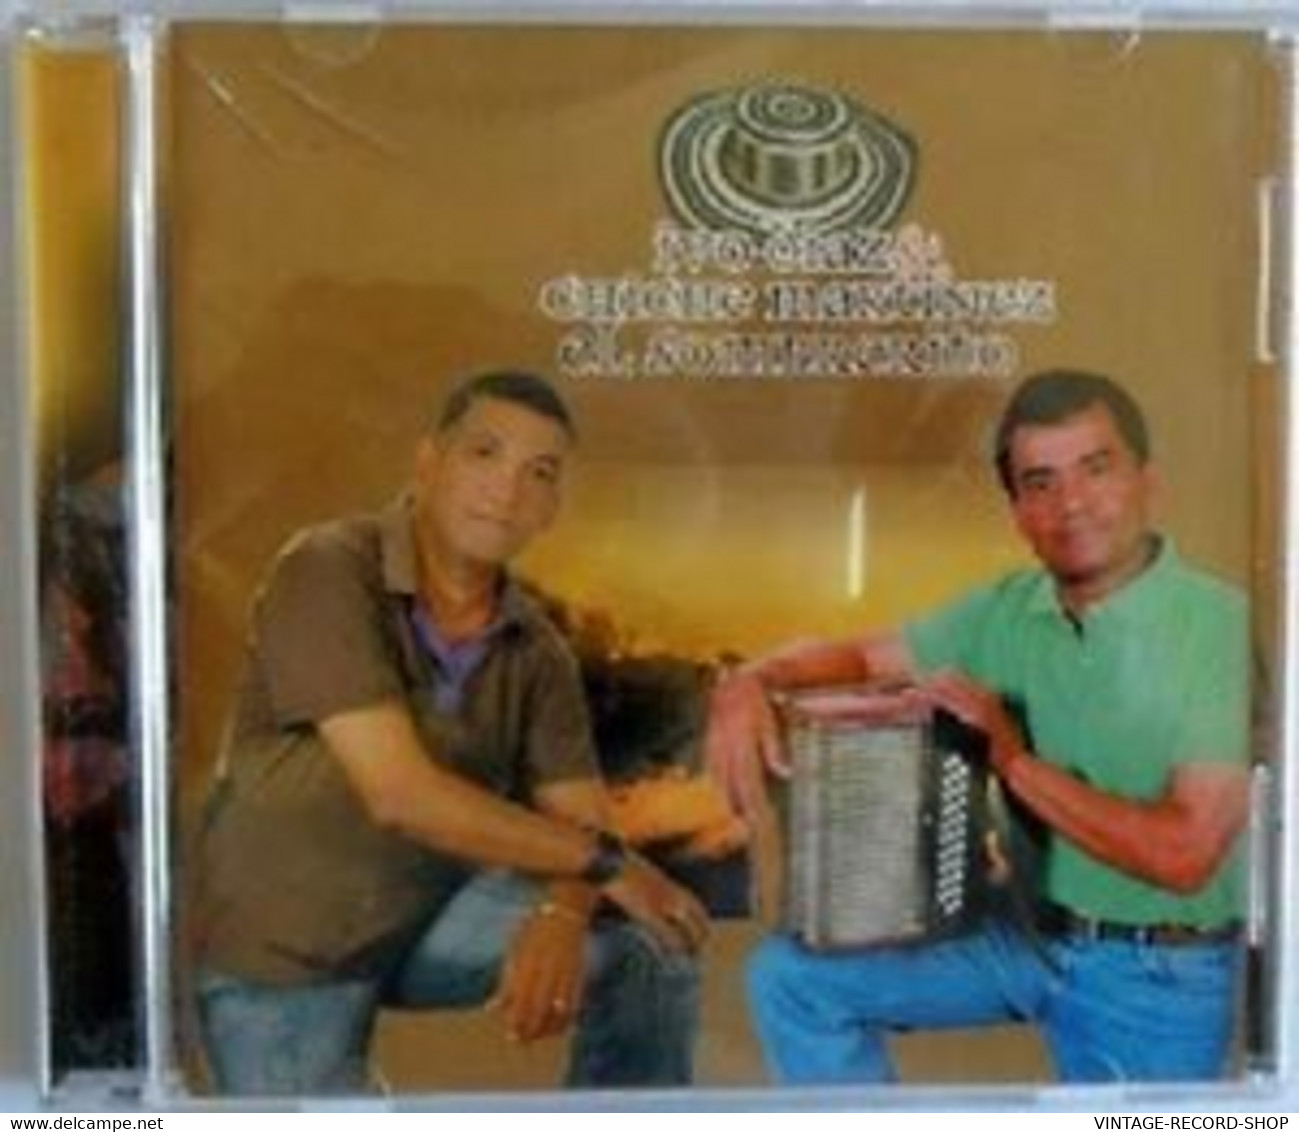 EL SOMBRERITO IVO DIAZ & CHICHE MARTINEZ CD YOYO MUSIC NEW-PASEOS - Dance, Techno & House